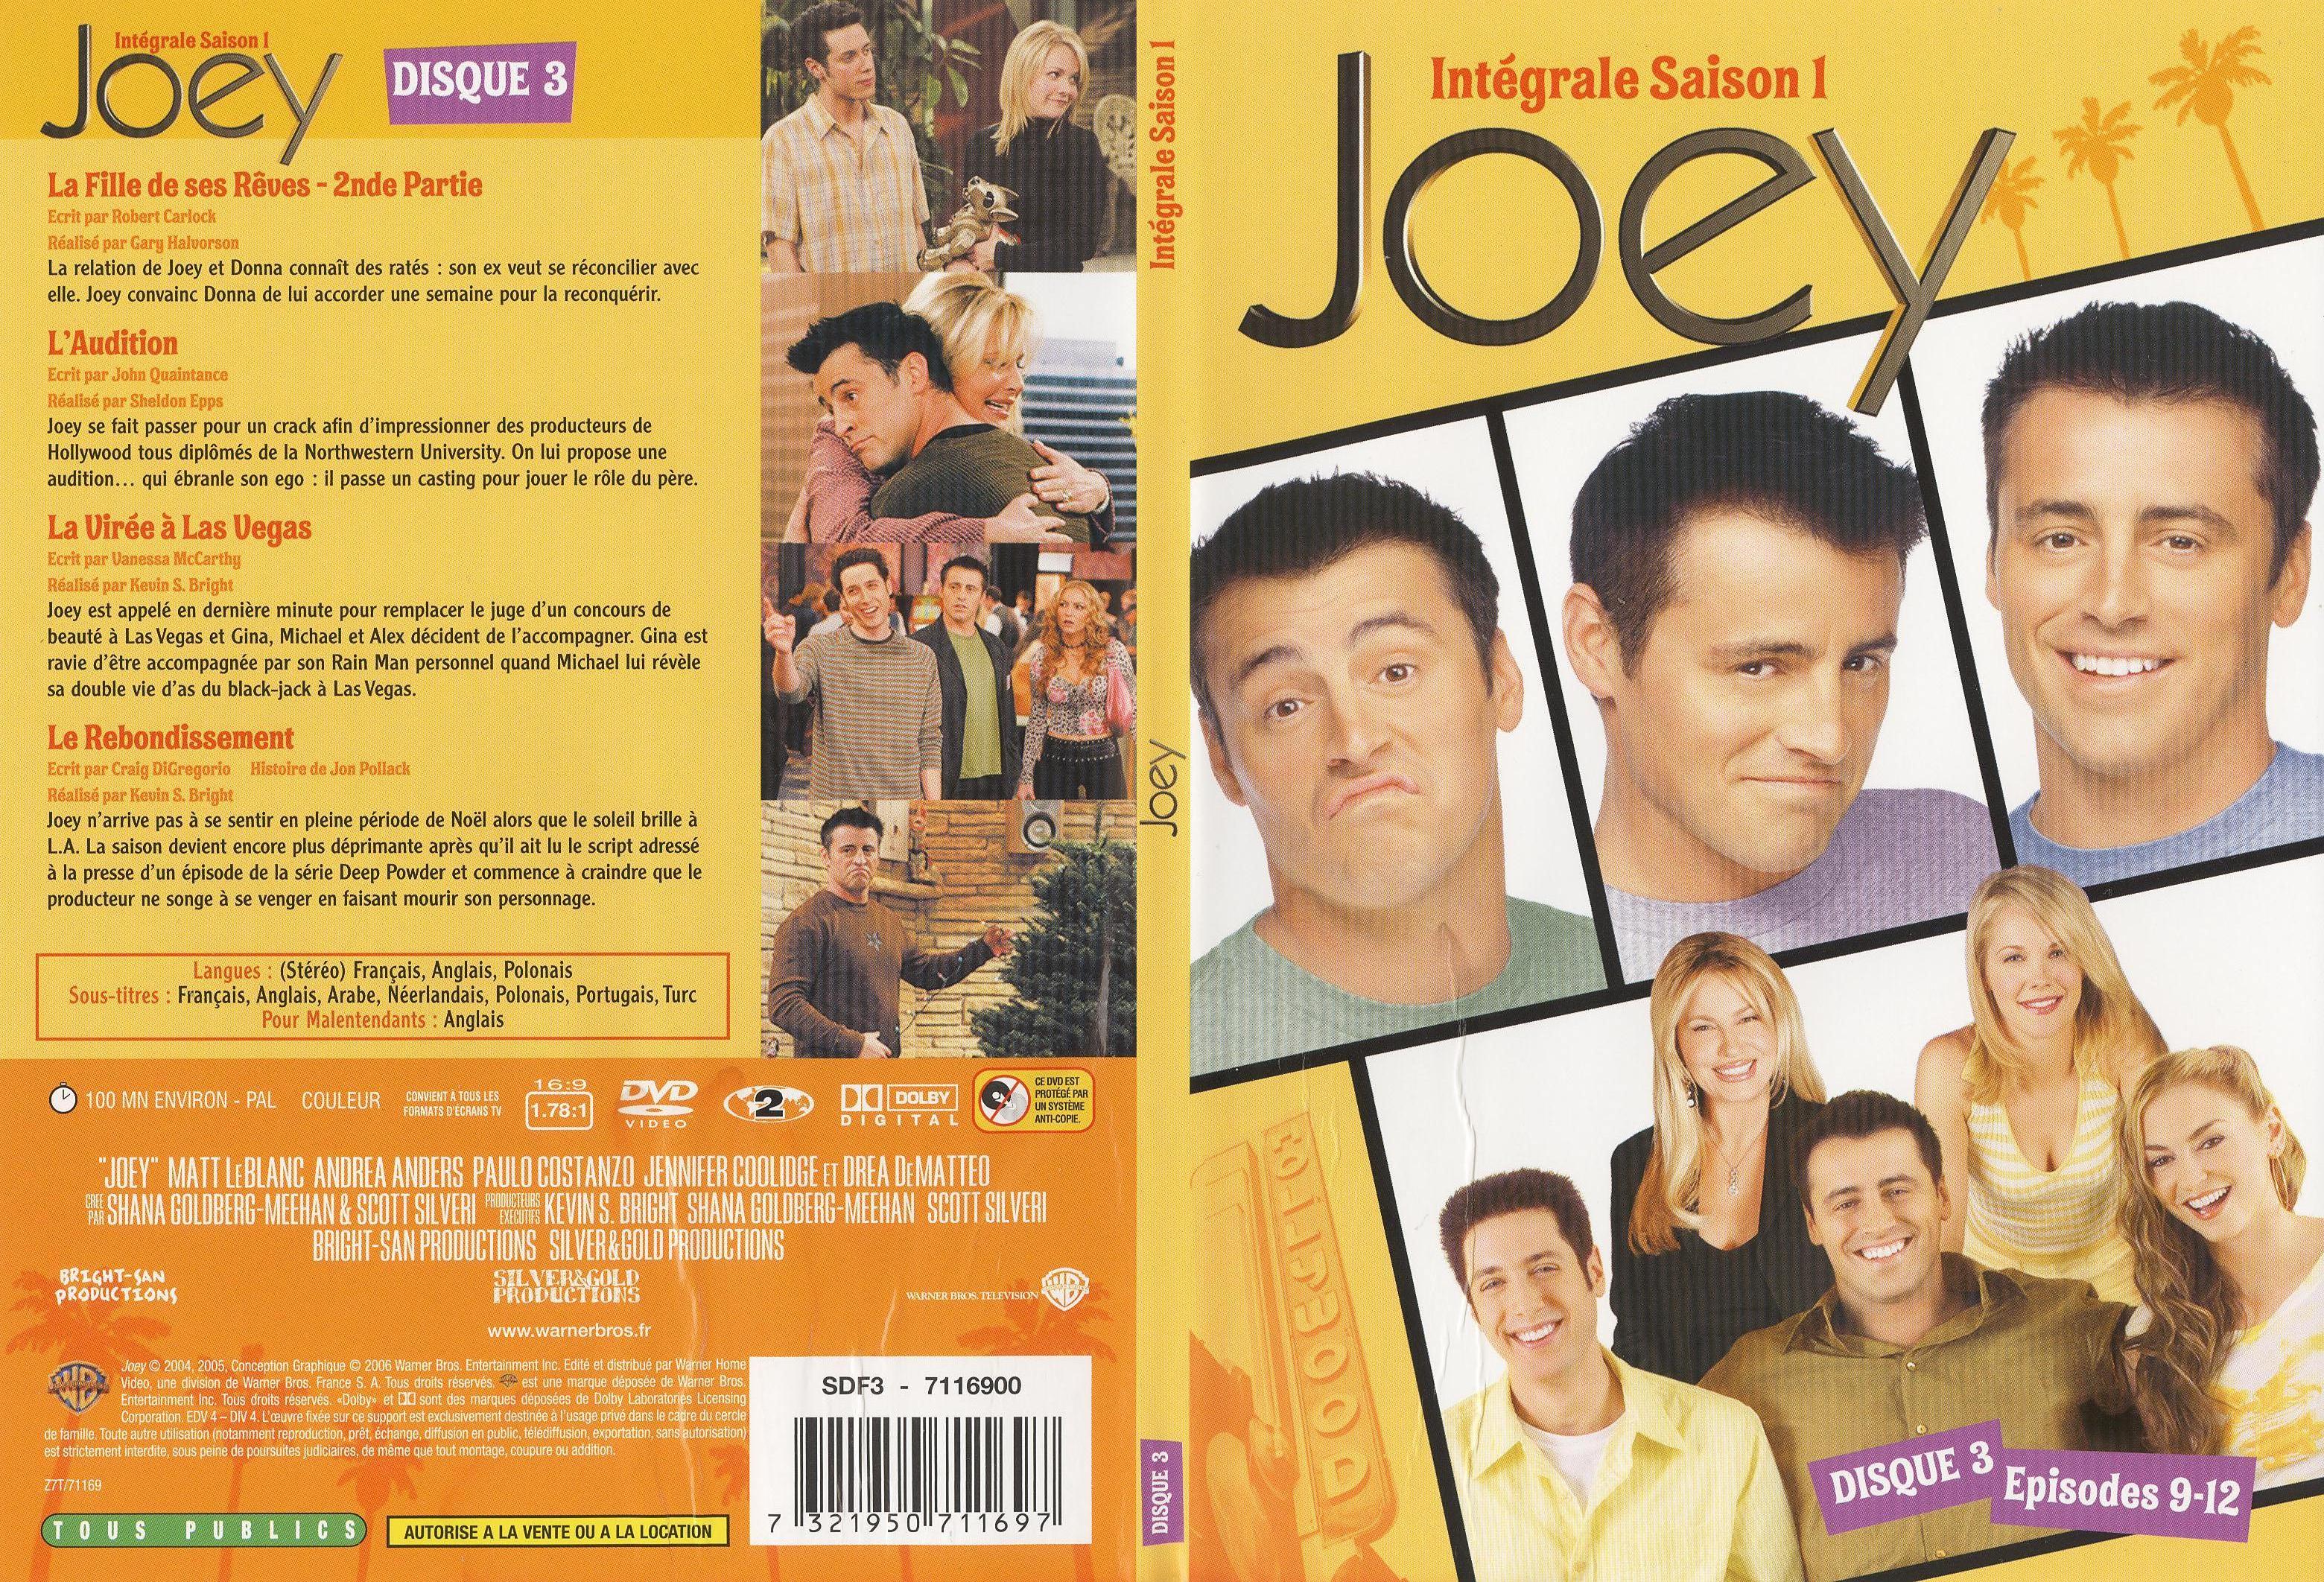 Jaquette DVD Joey Saison 1 DVD 3